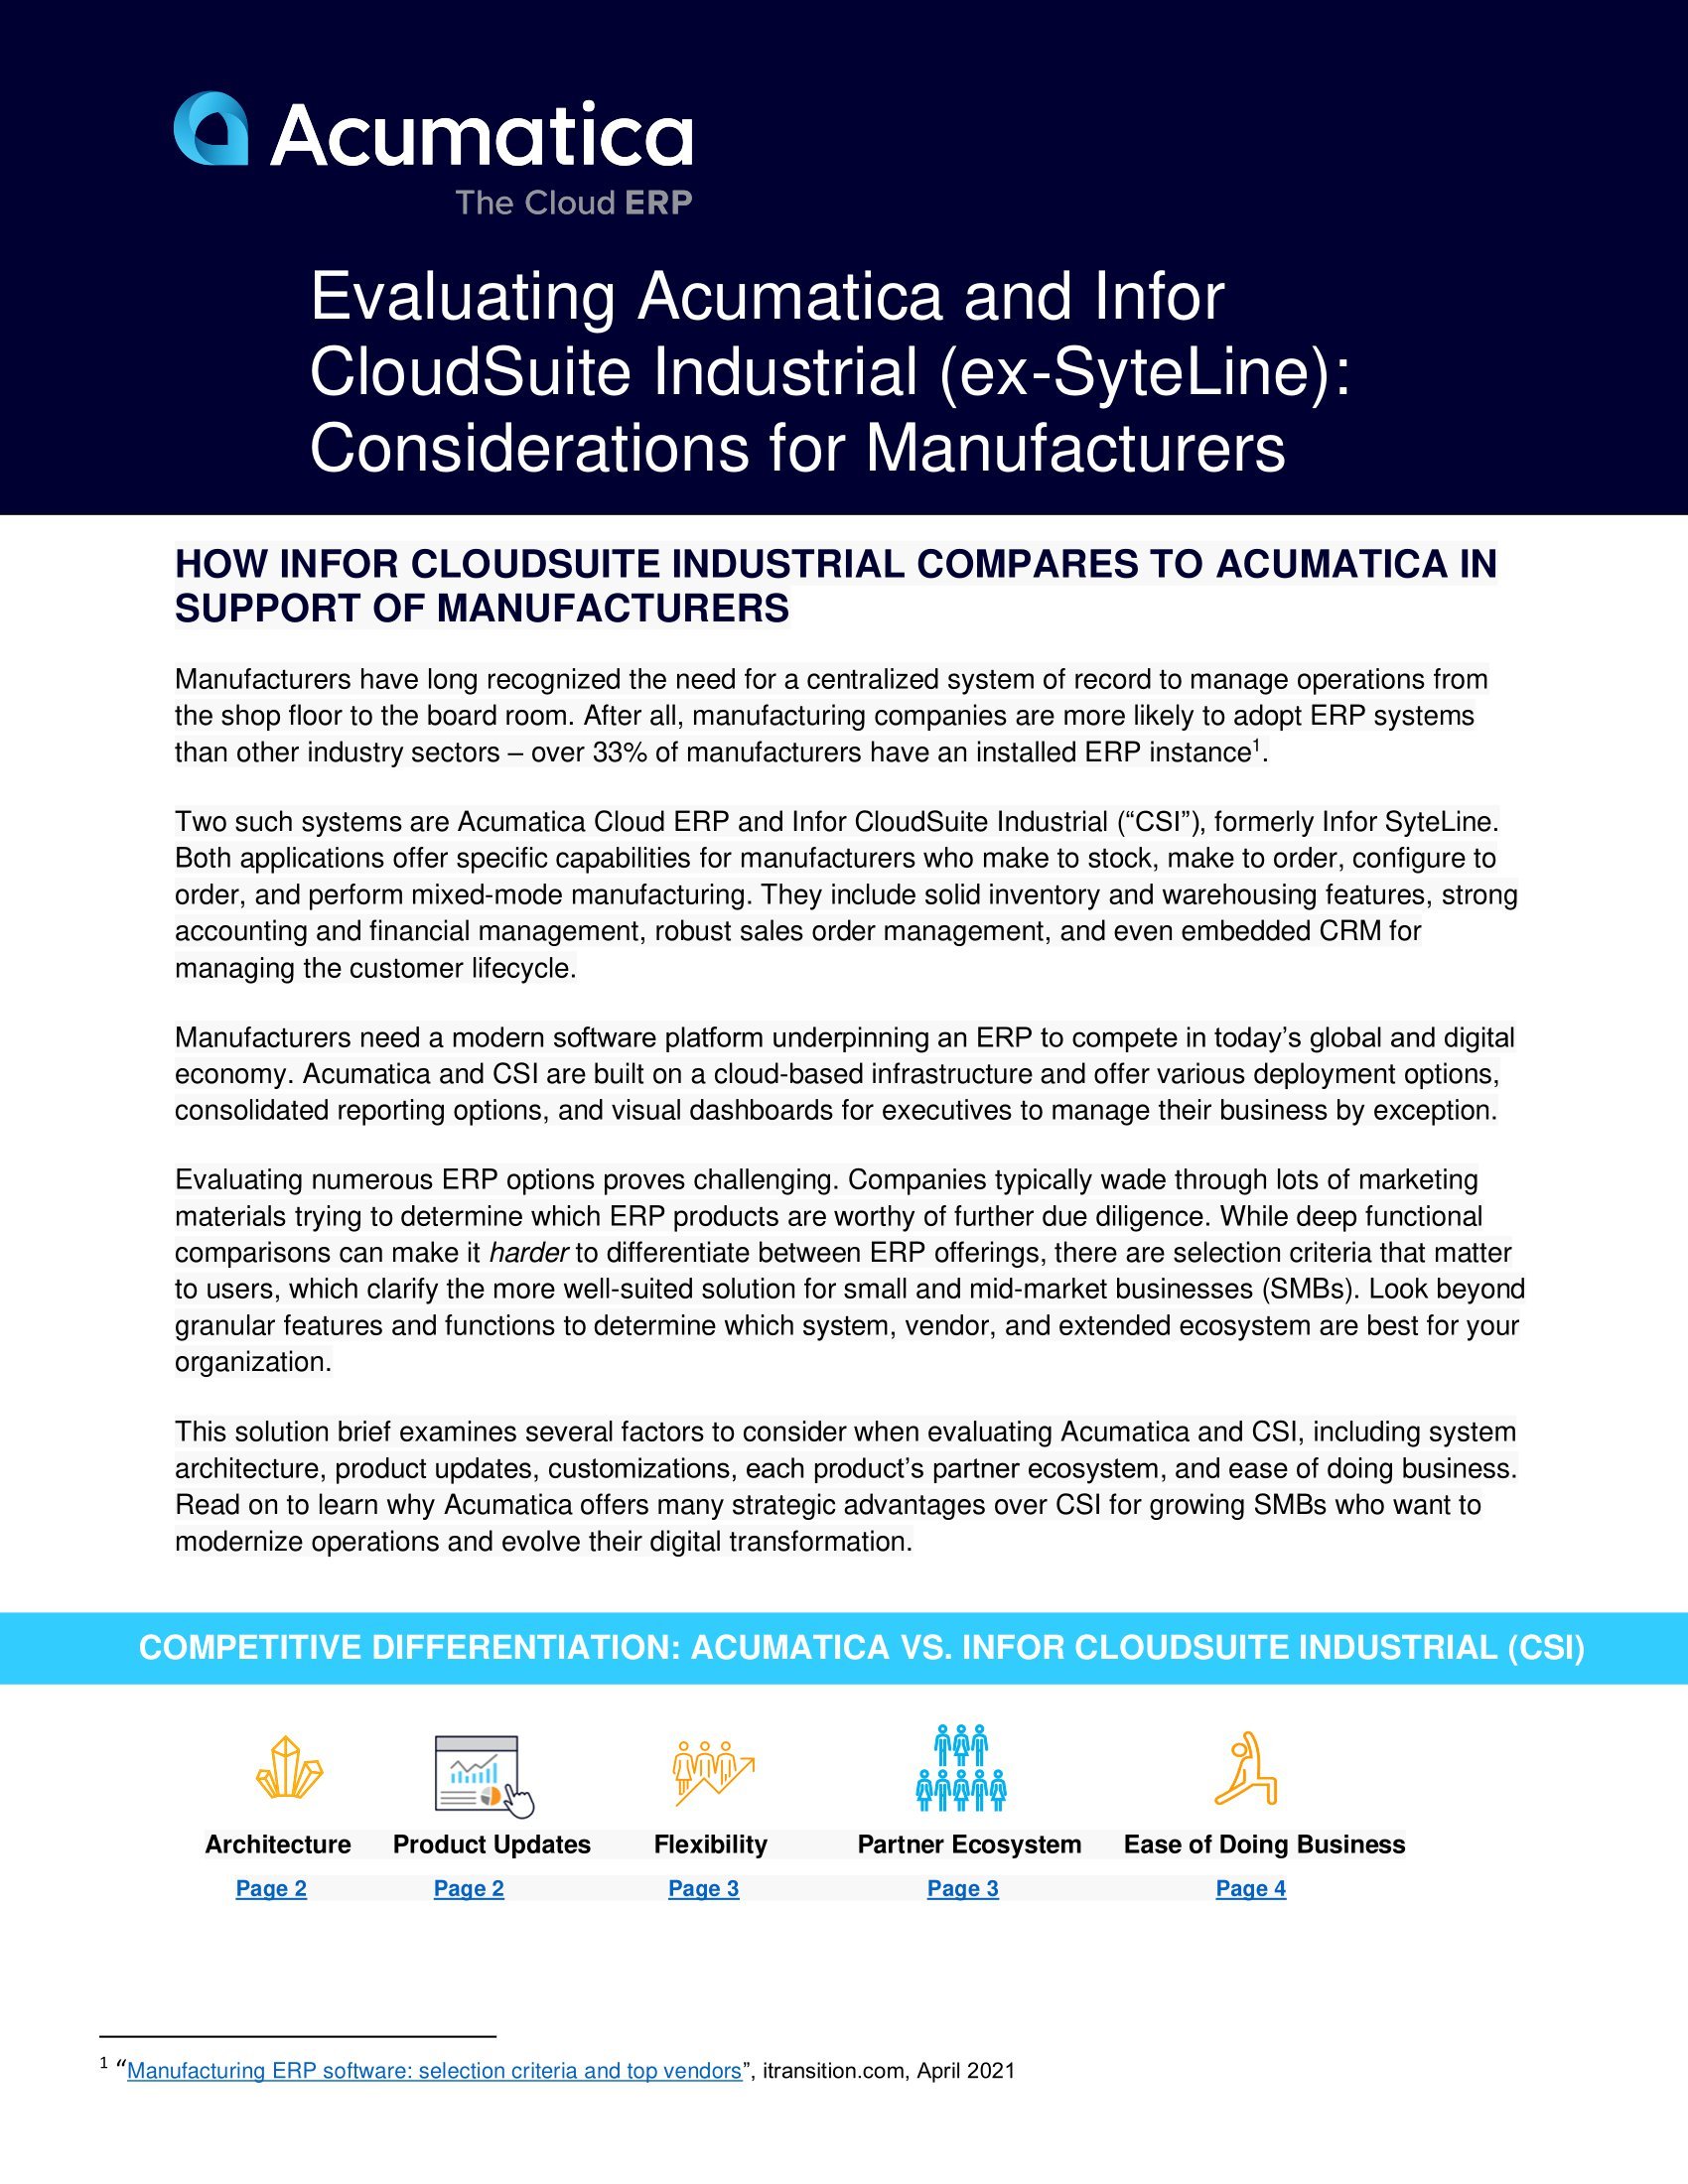 Acumatica vs Infor CloudSuite Industrial : Quel système ERP les fabricants devraient-ils choisir ?